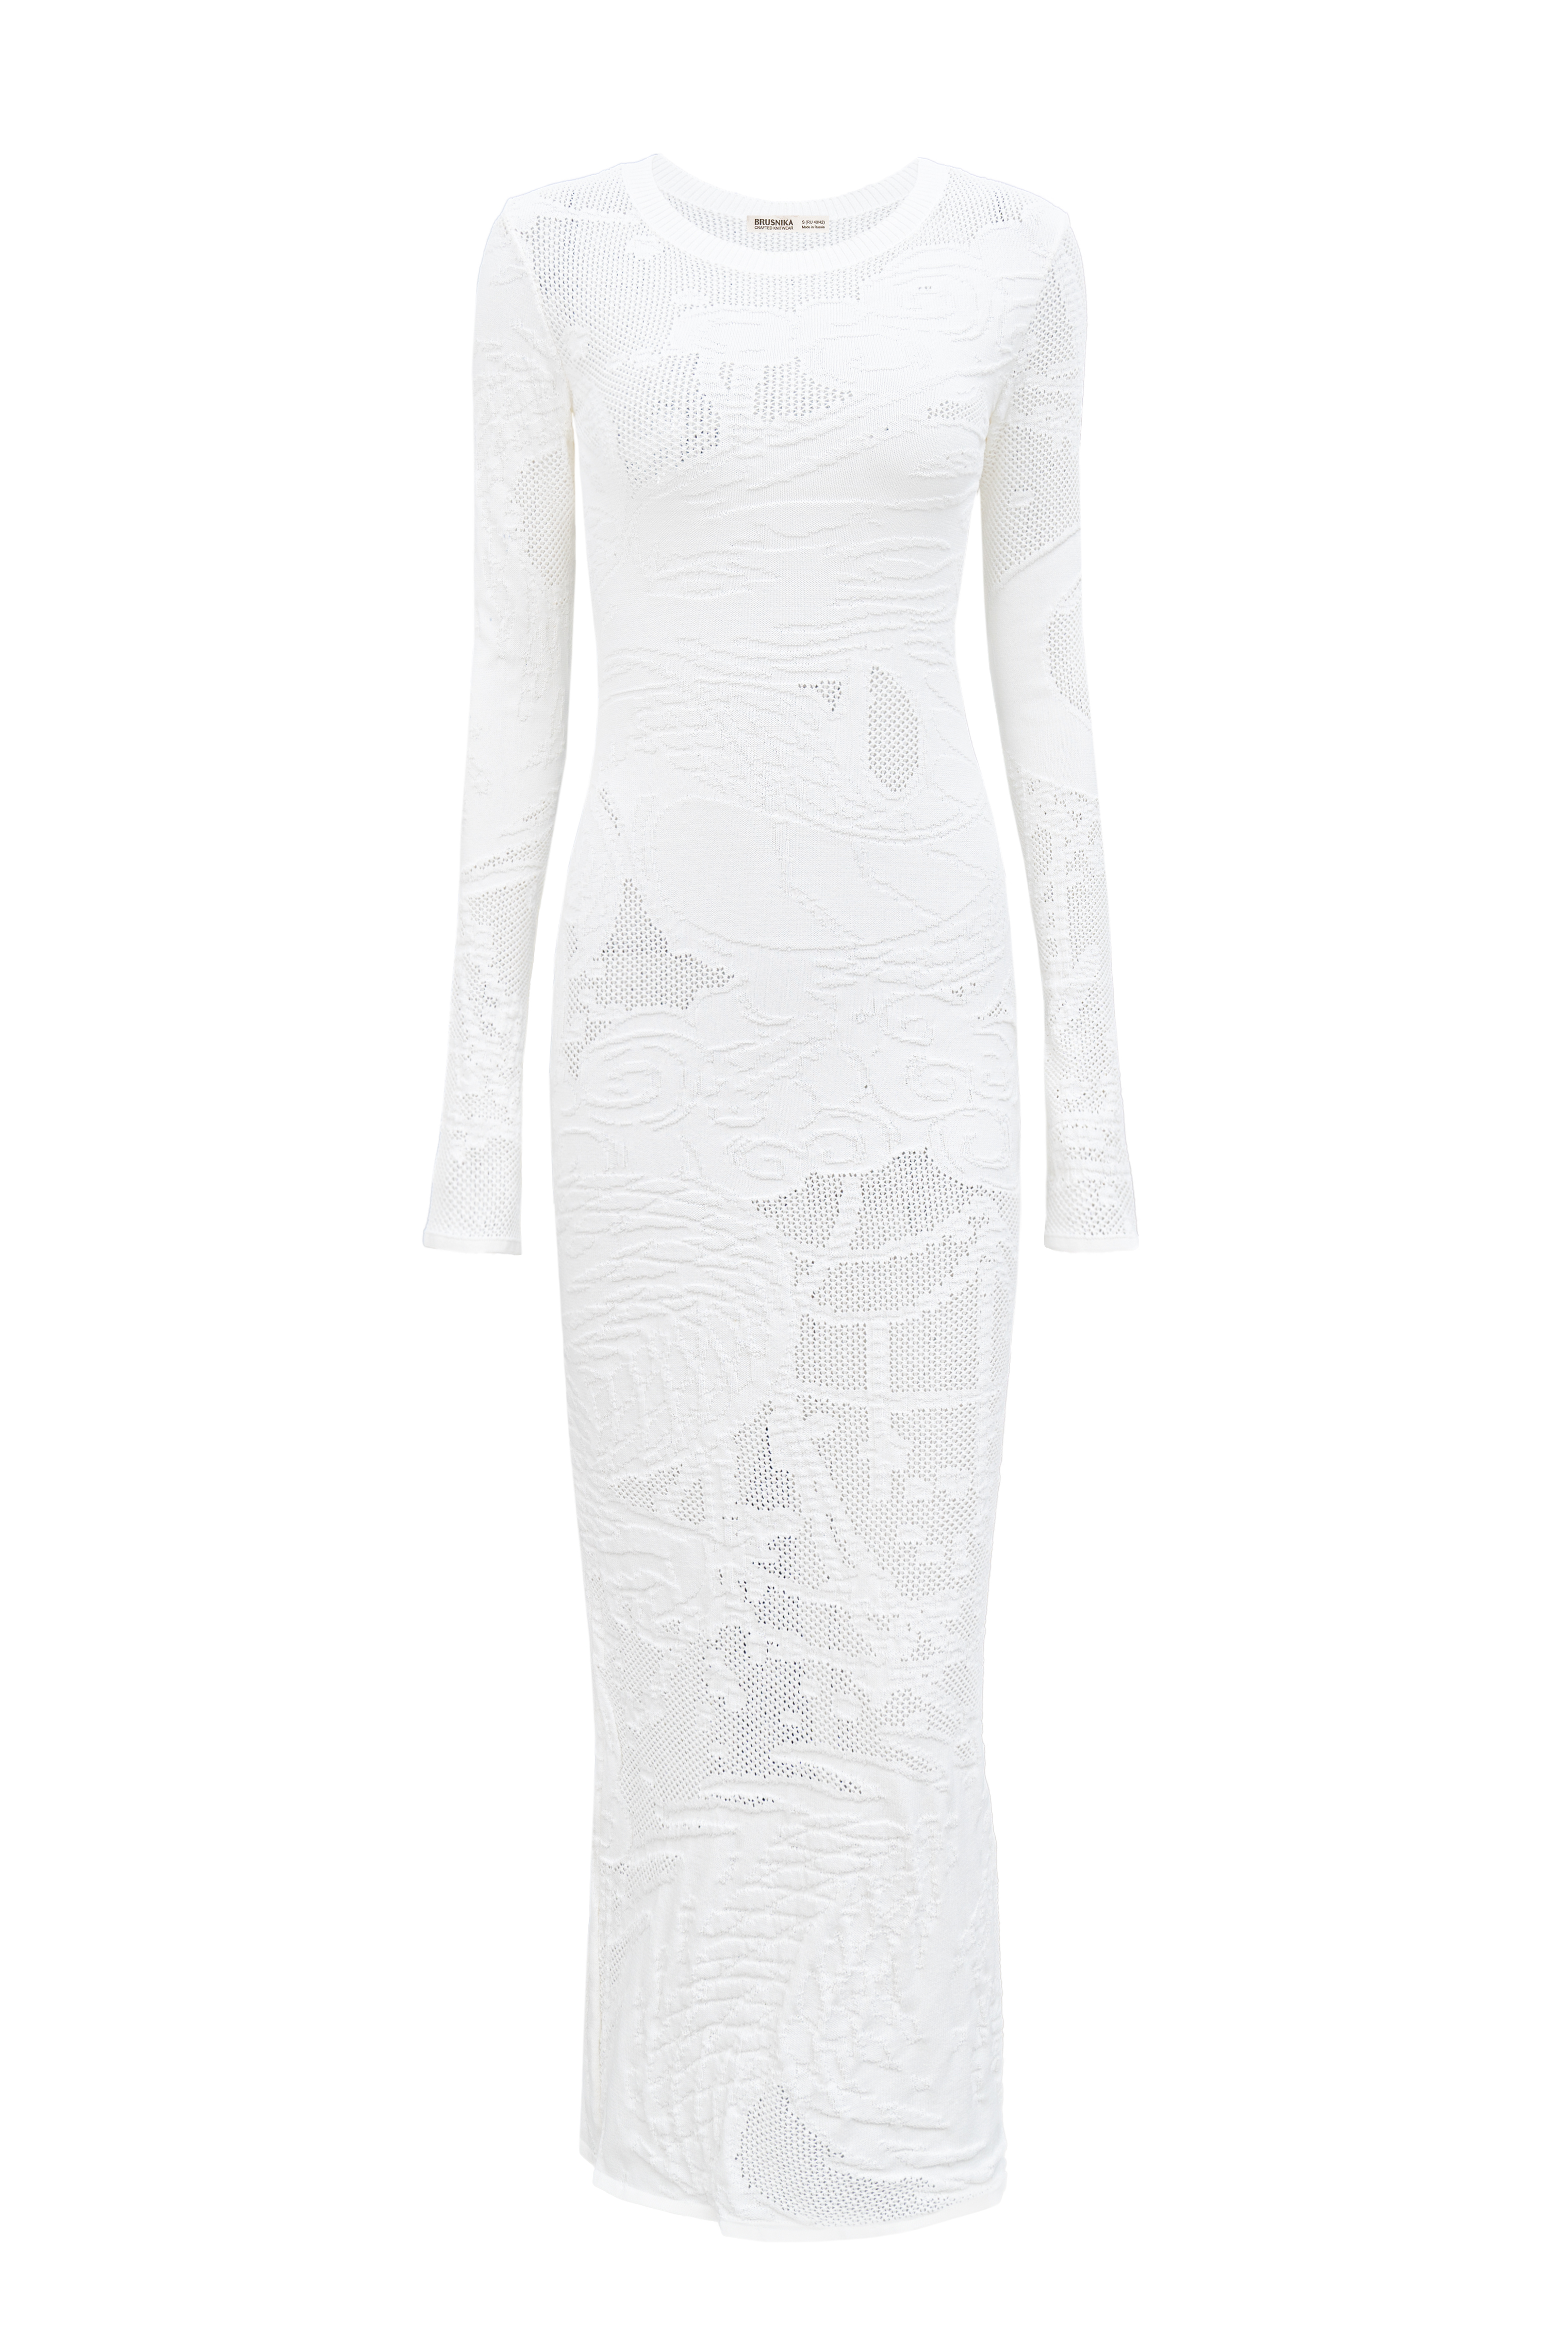 Dress 4949-02 White from BRUSNiKA